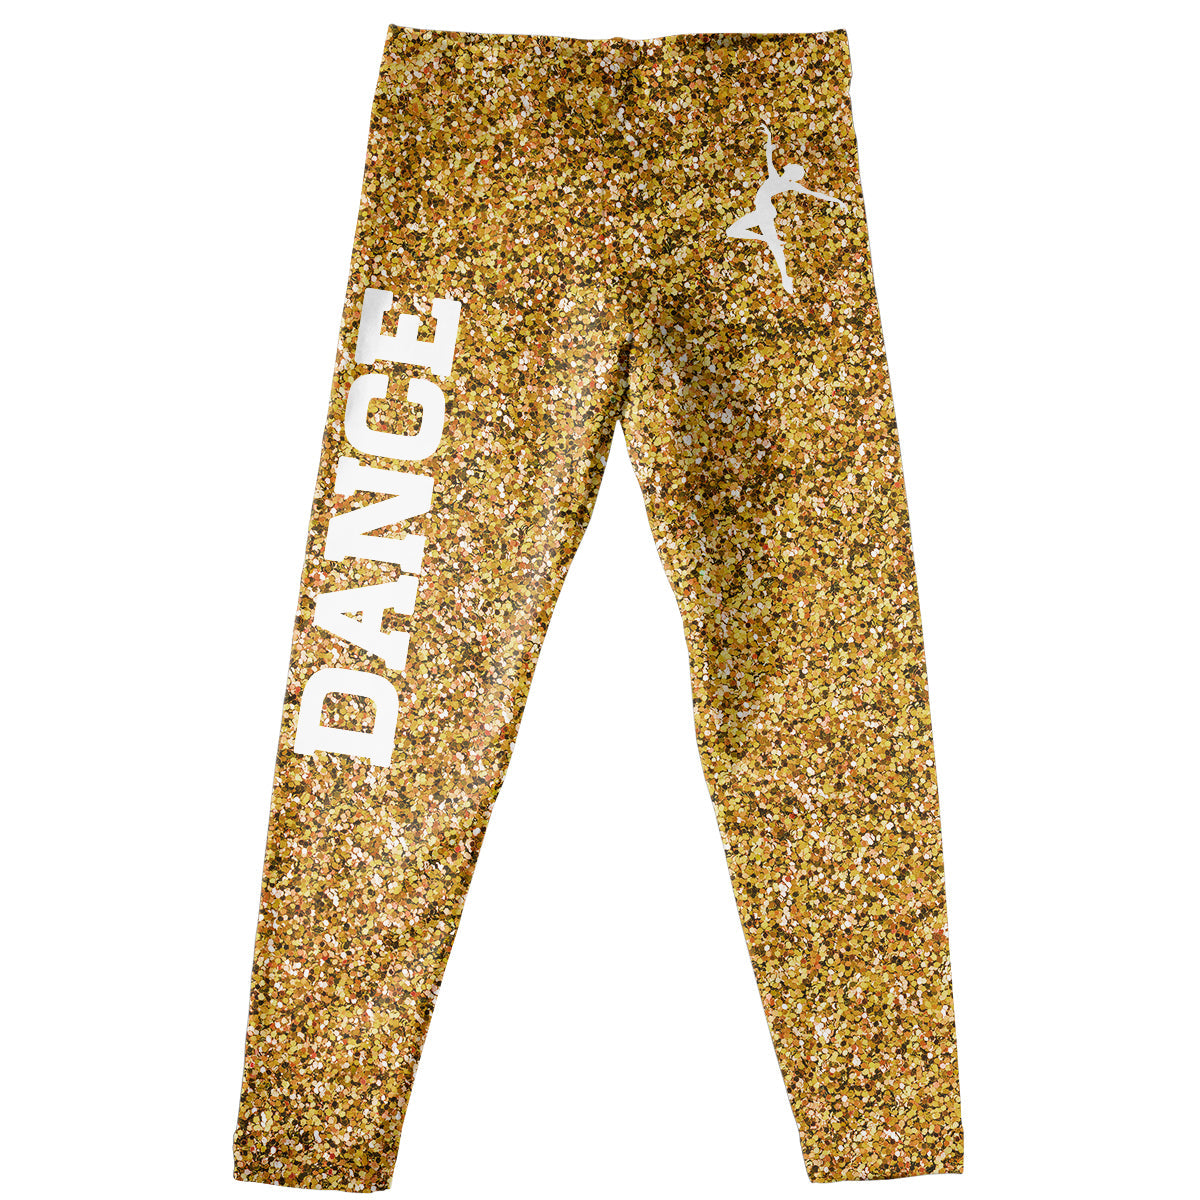 Gold glitter dancer silhouette girls leggings - Wimziy&Co.